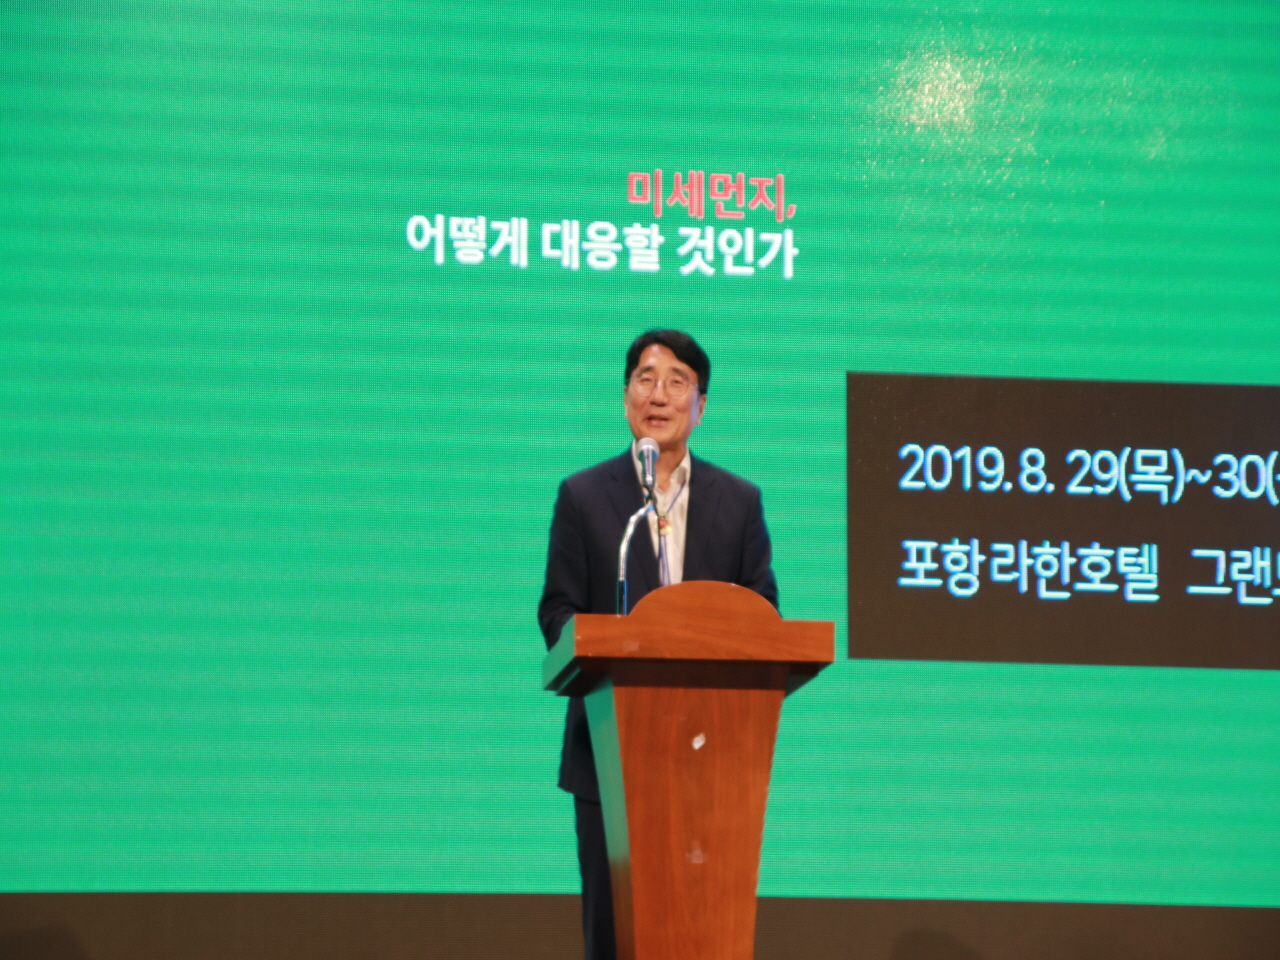 2019 호남제주영남 지속가능발전포럼 개최